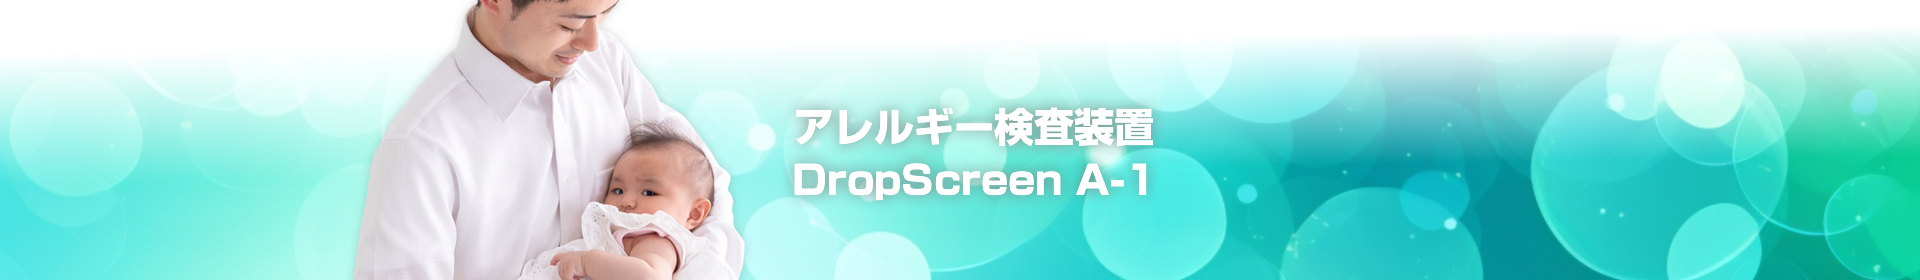 アレルギー検査DropScreen